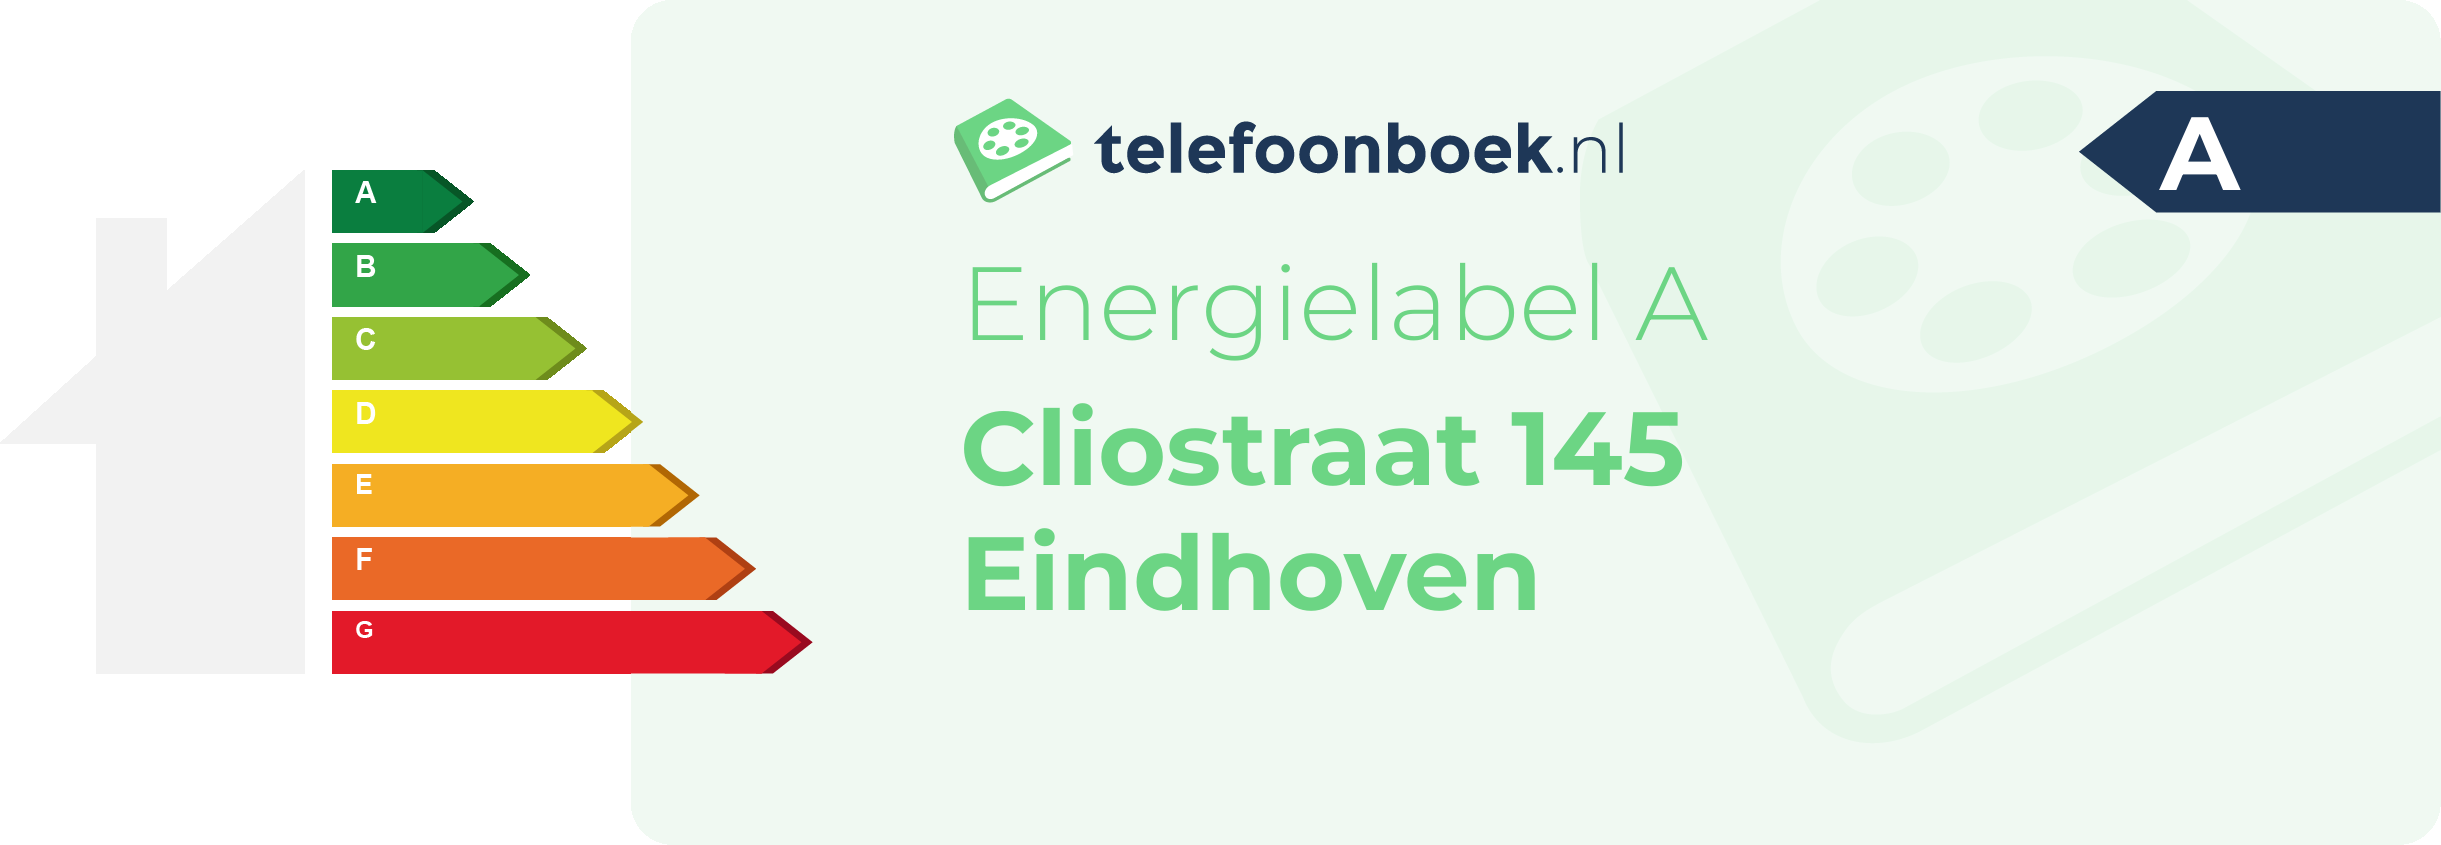 Energielabel Cliostraat 145 Eindhoven